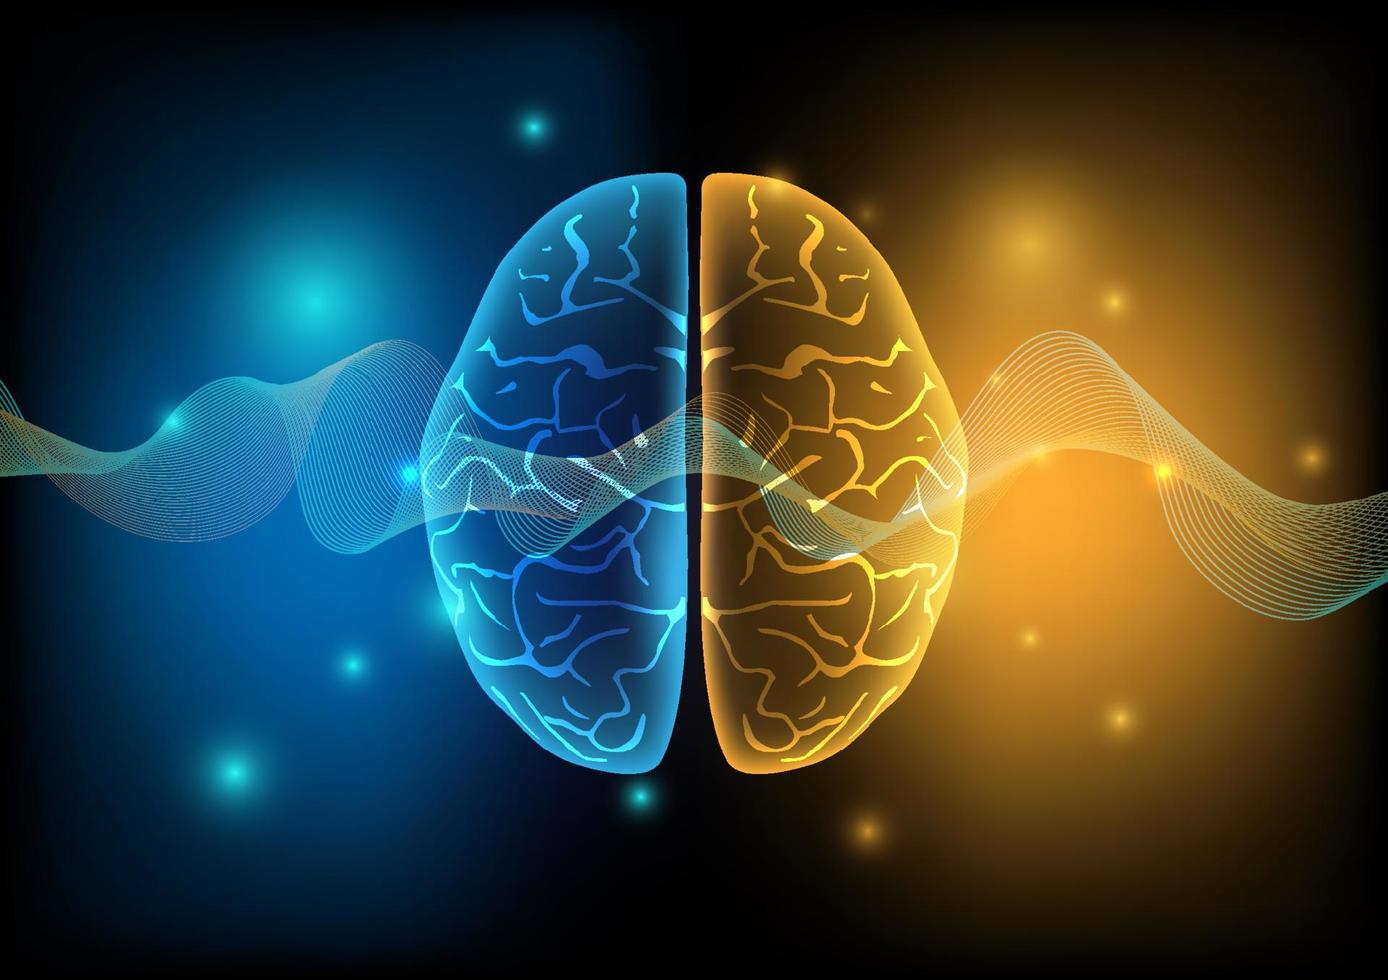 ilustração do cérebro humano e ondas cerebrais em fundo de tecnologia. vetor